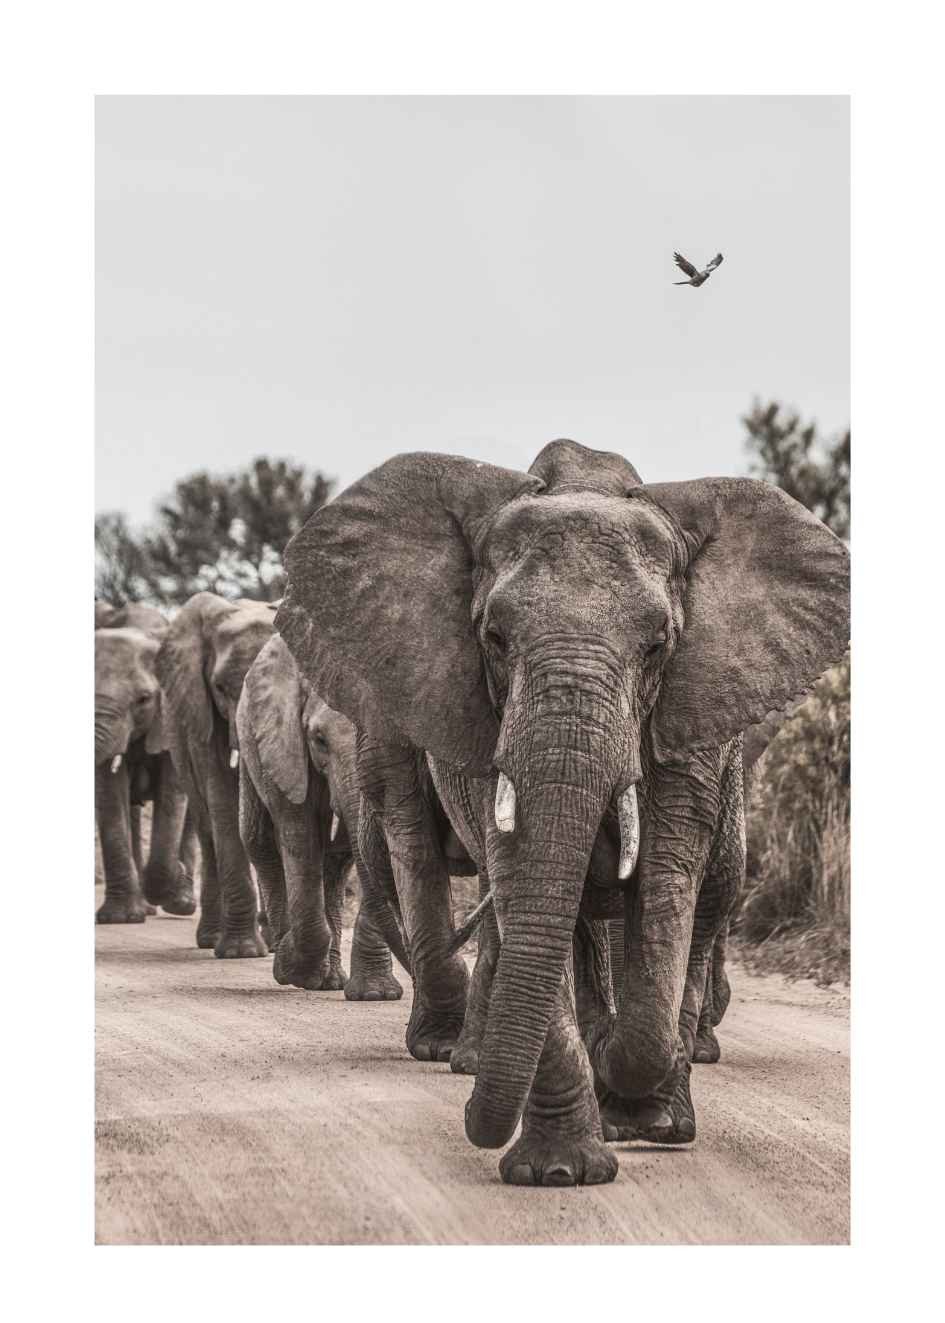 elefanten bilder